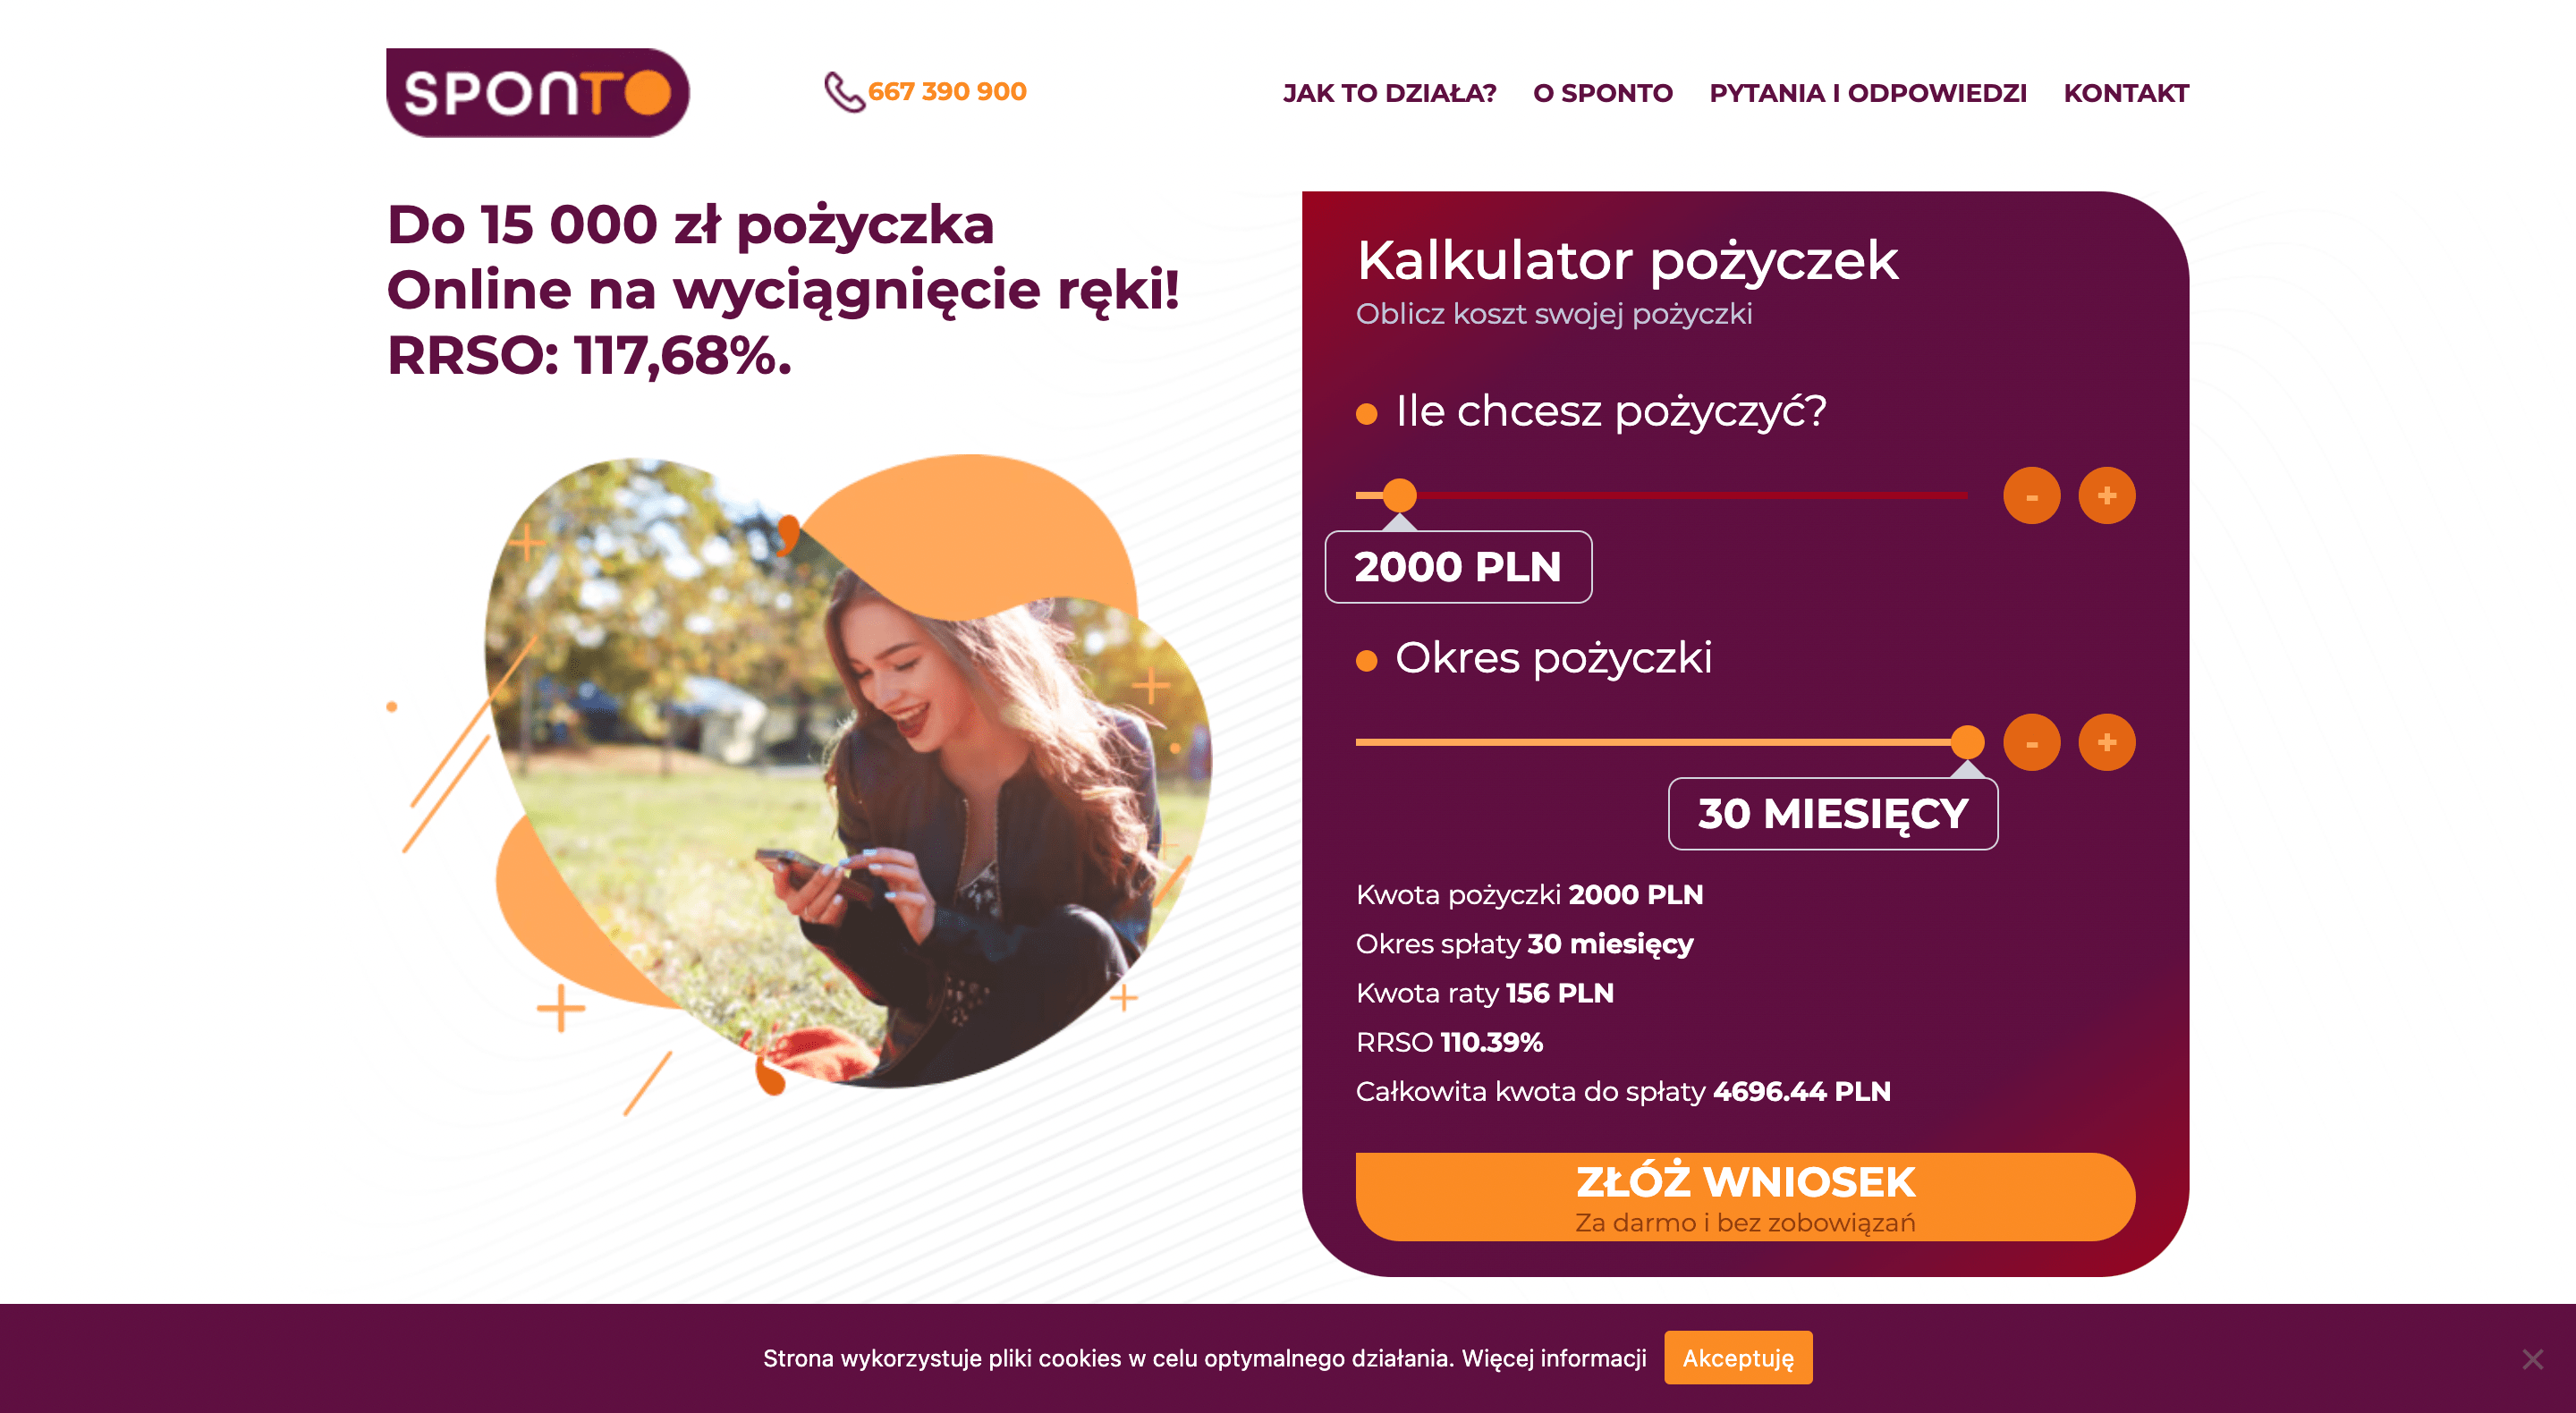 Sponto - pożyczki do 15 000 zł.